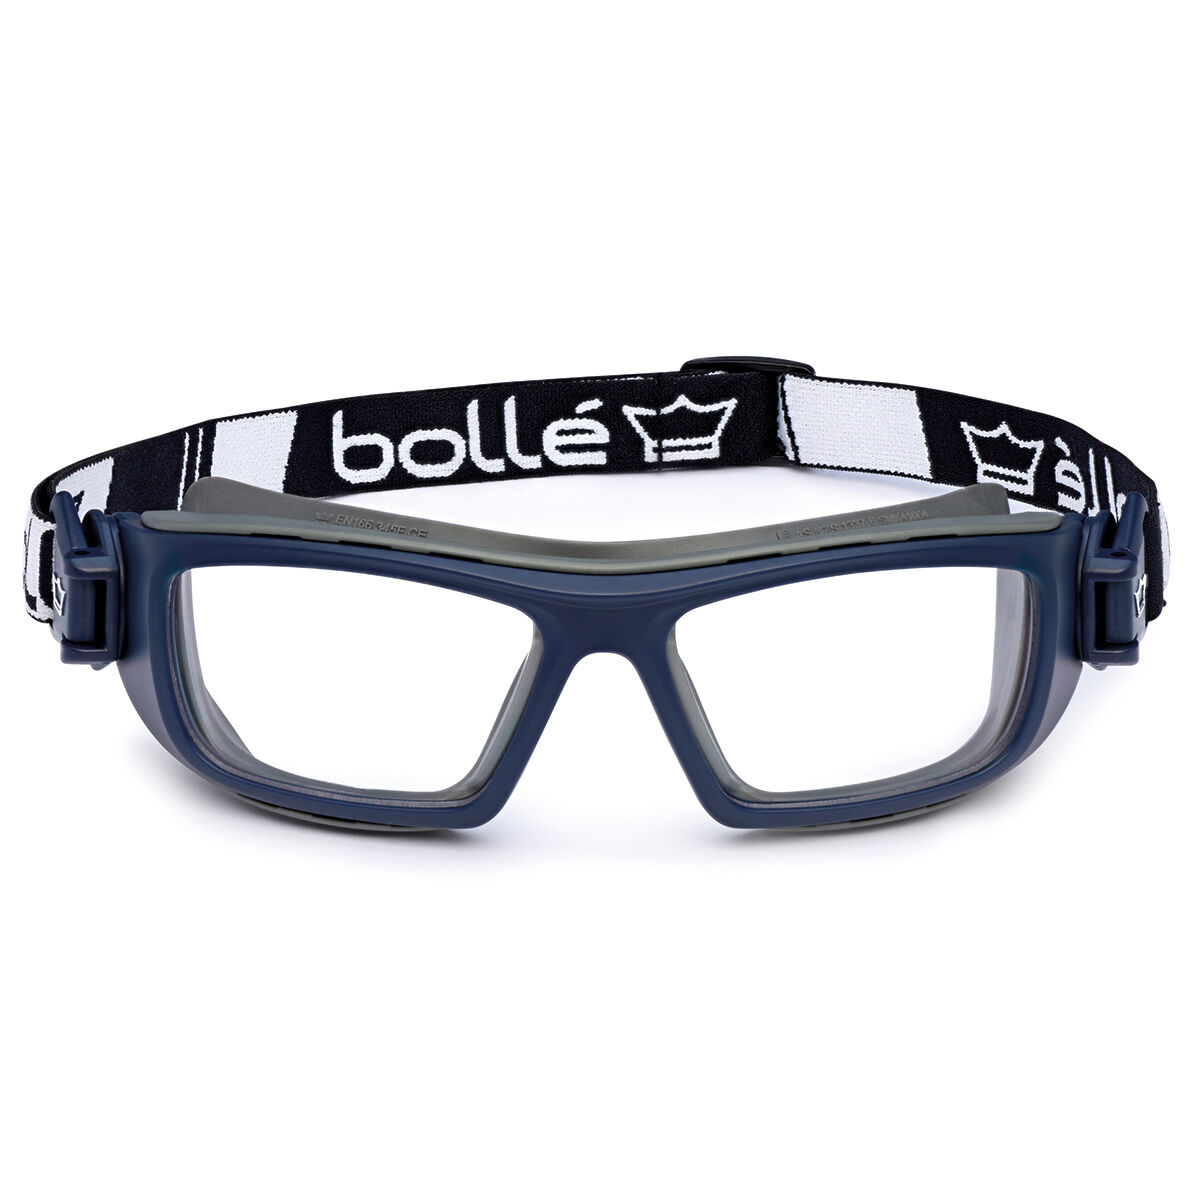 Verschiedene Optionen Bolle Safety Brille & Hülle Beutel Kordel 